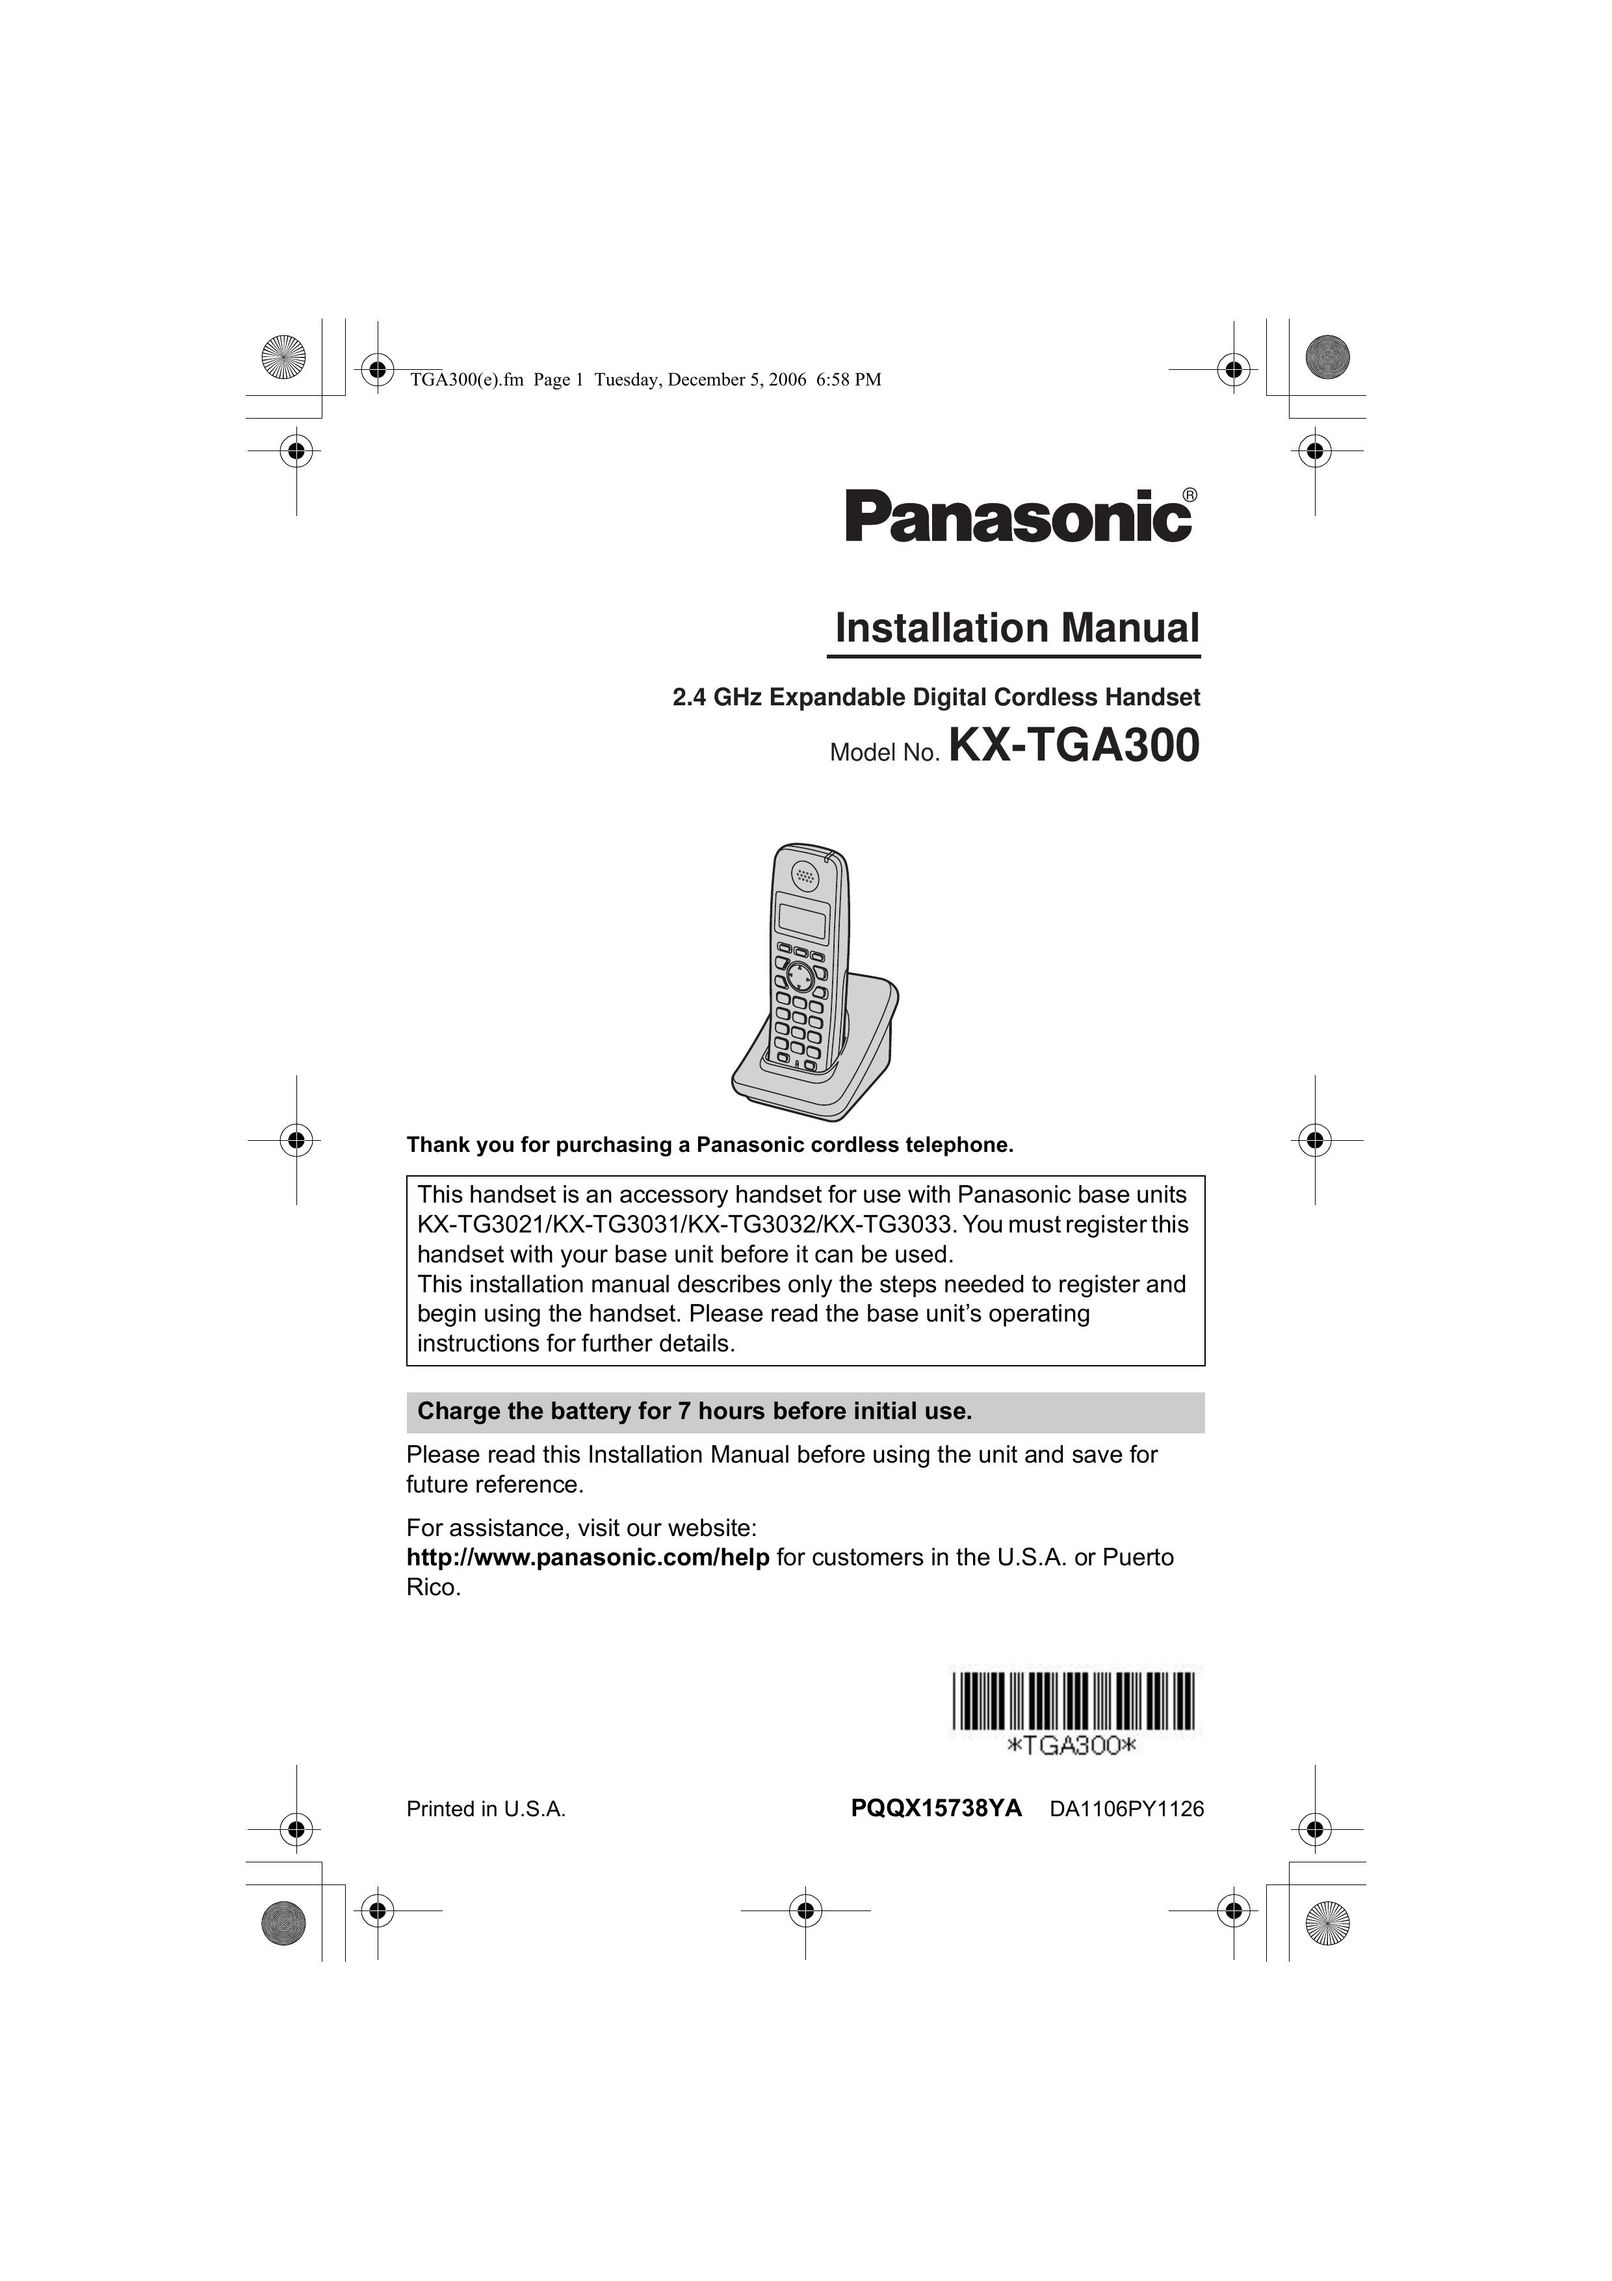 Panasonic KX-TG3021 Cordless Telephone User Manual